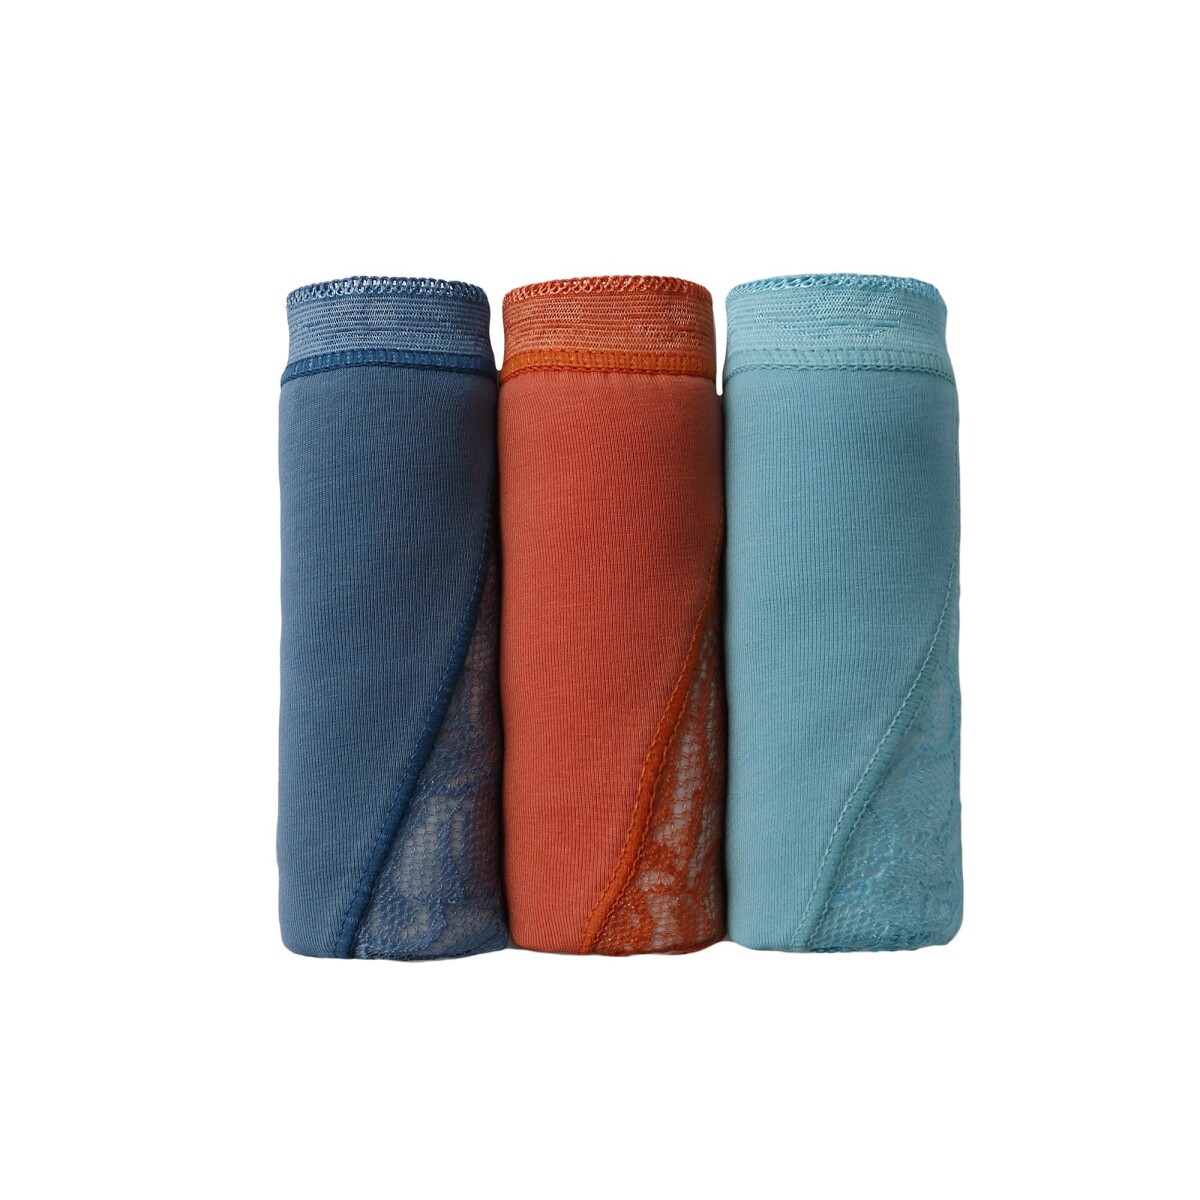 Blancheporte Sada 3 kalhotek maxi z pružné bavlny s krajkou oranžovámodrátyrkysová 3840